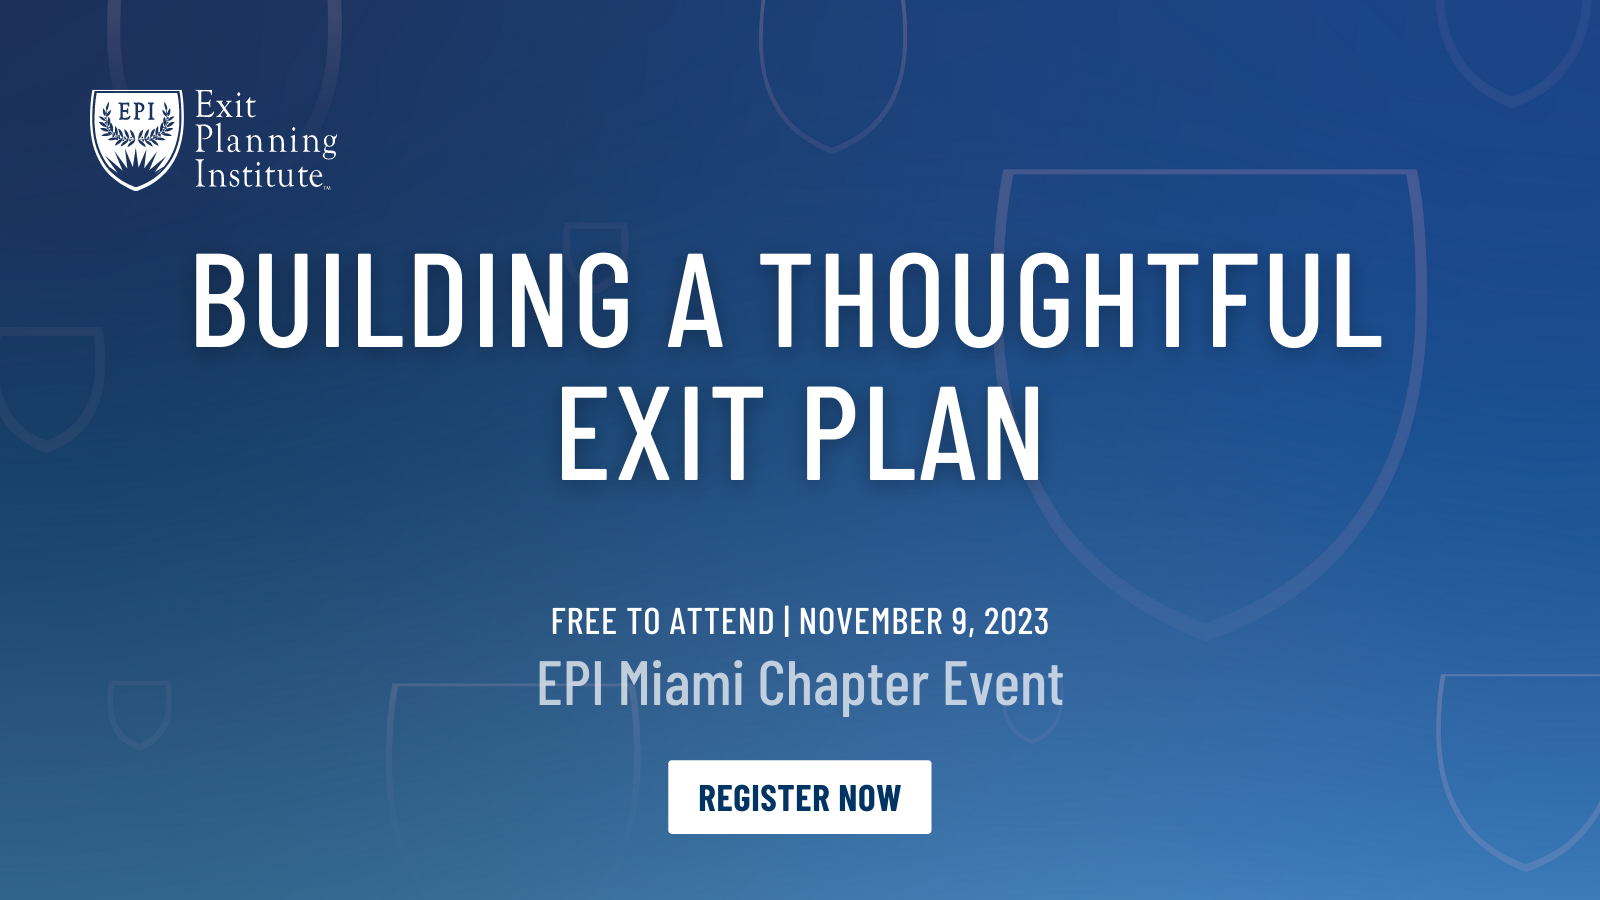 Exit Planning Institute Image